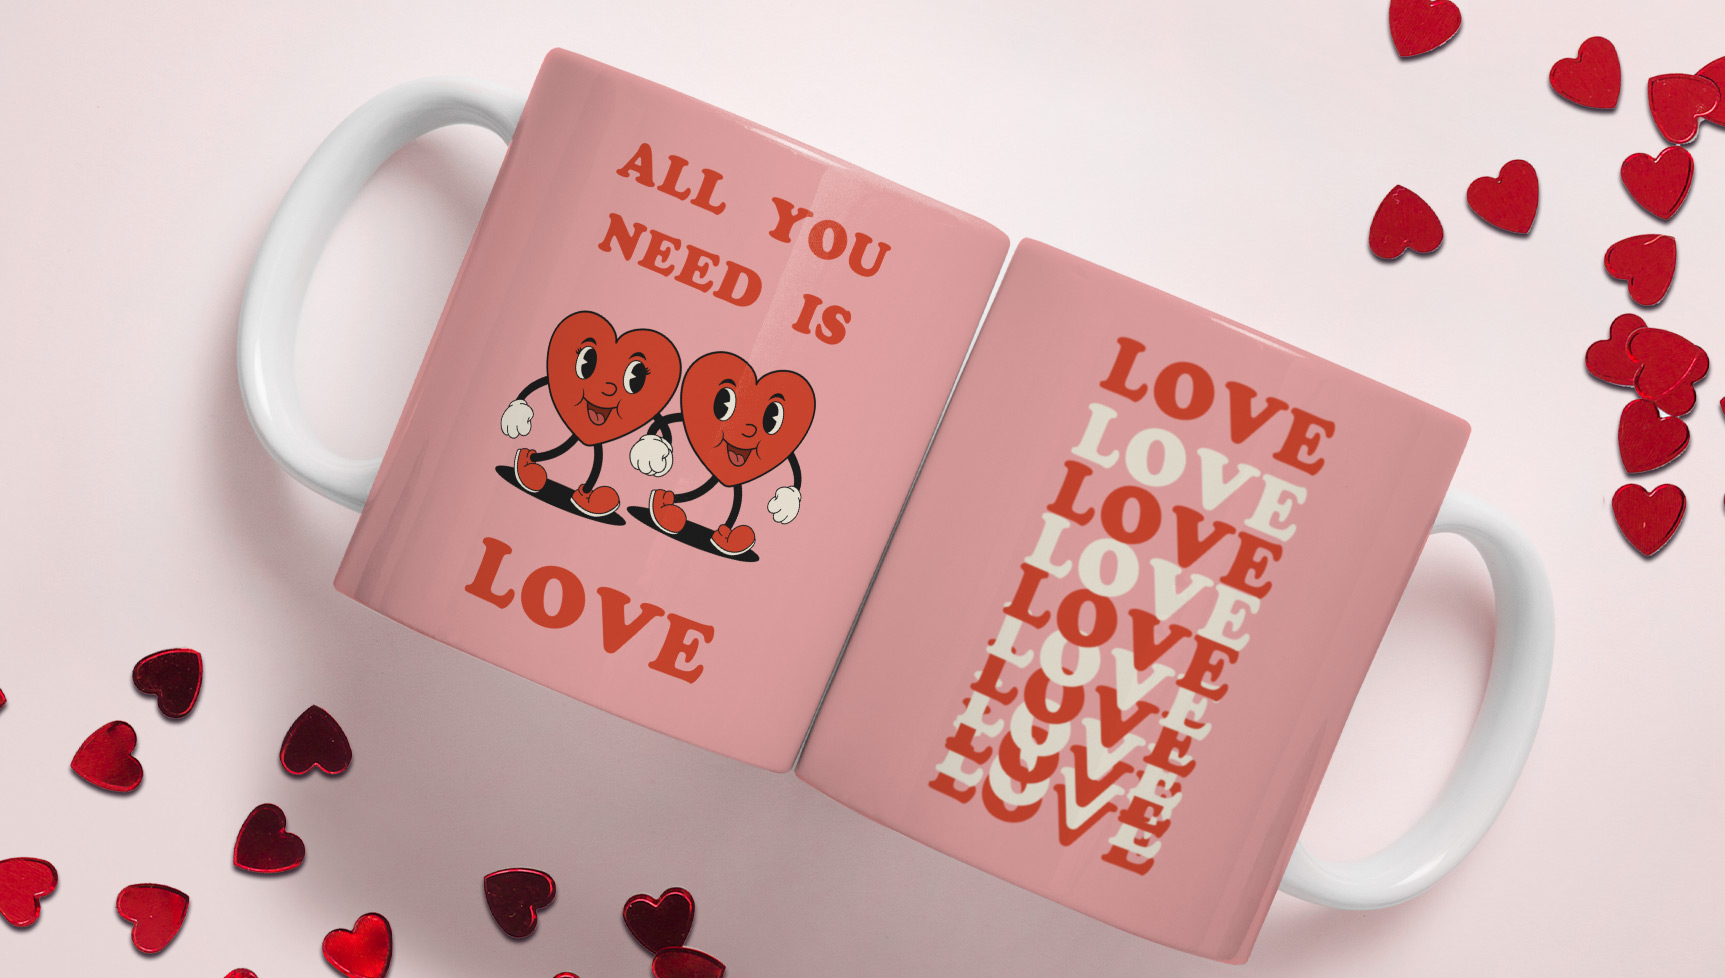 Manualidades de San Valentín: 15 ideas para el día más romántico